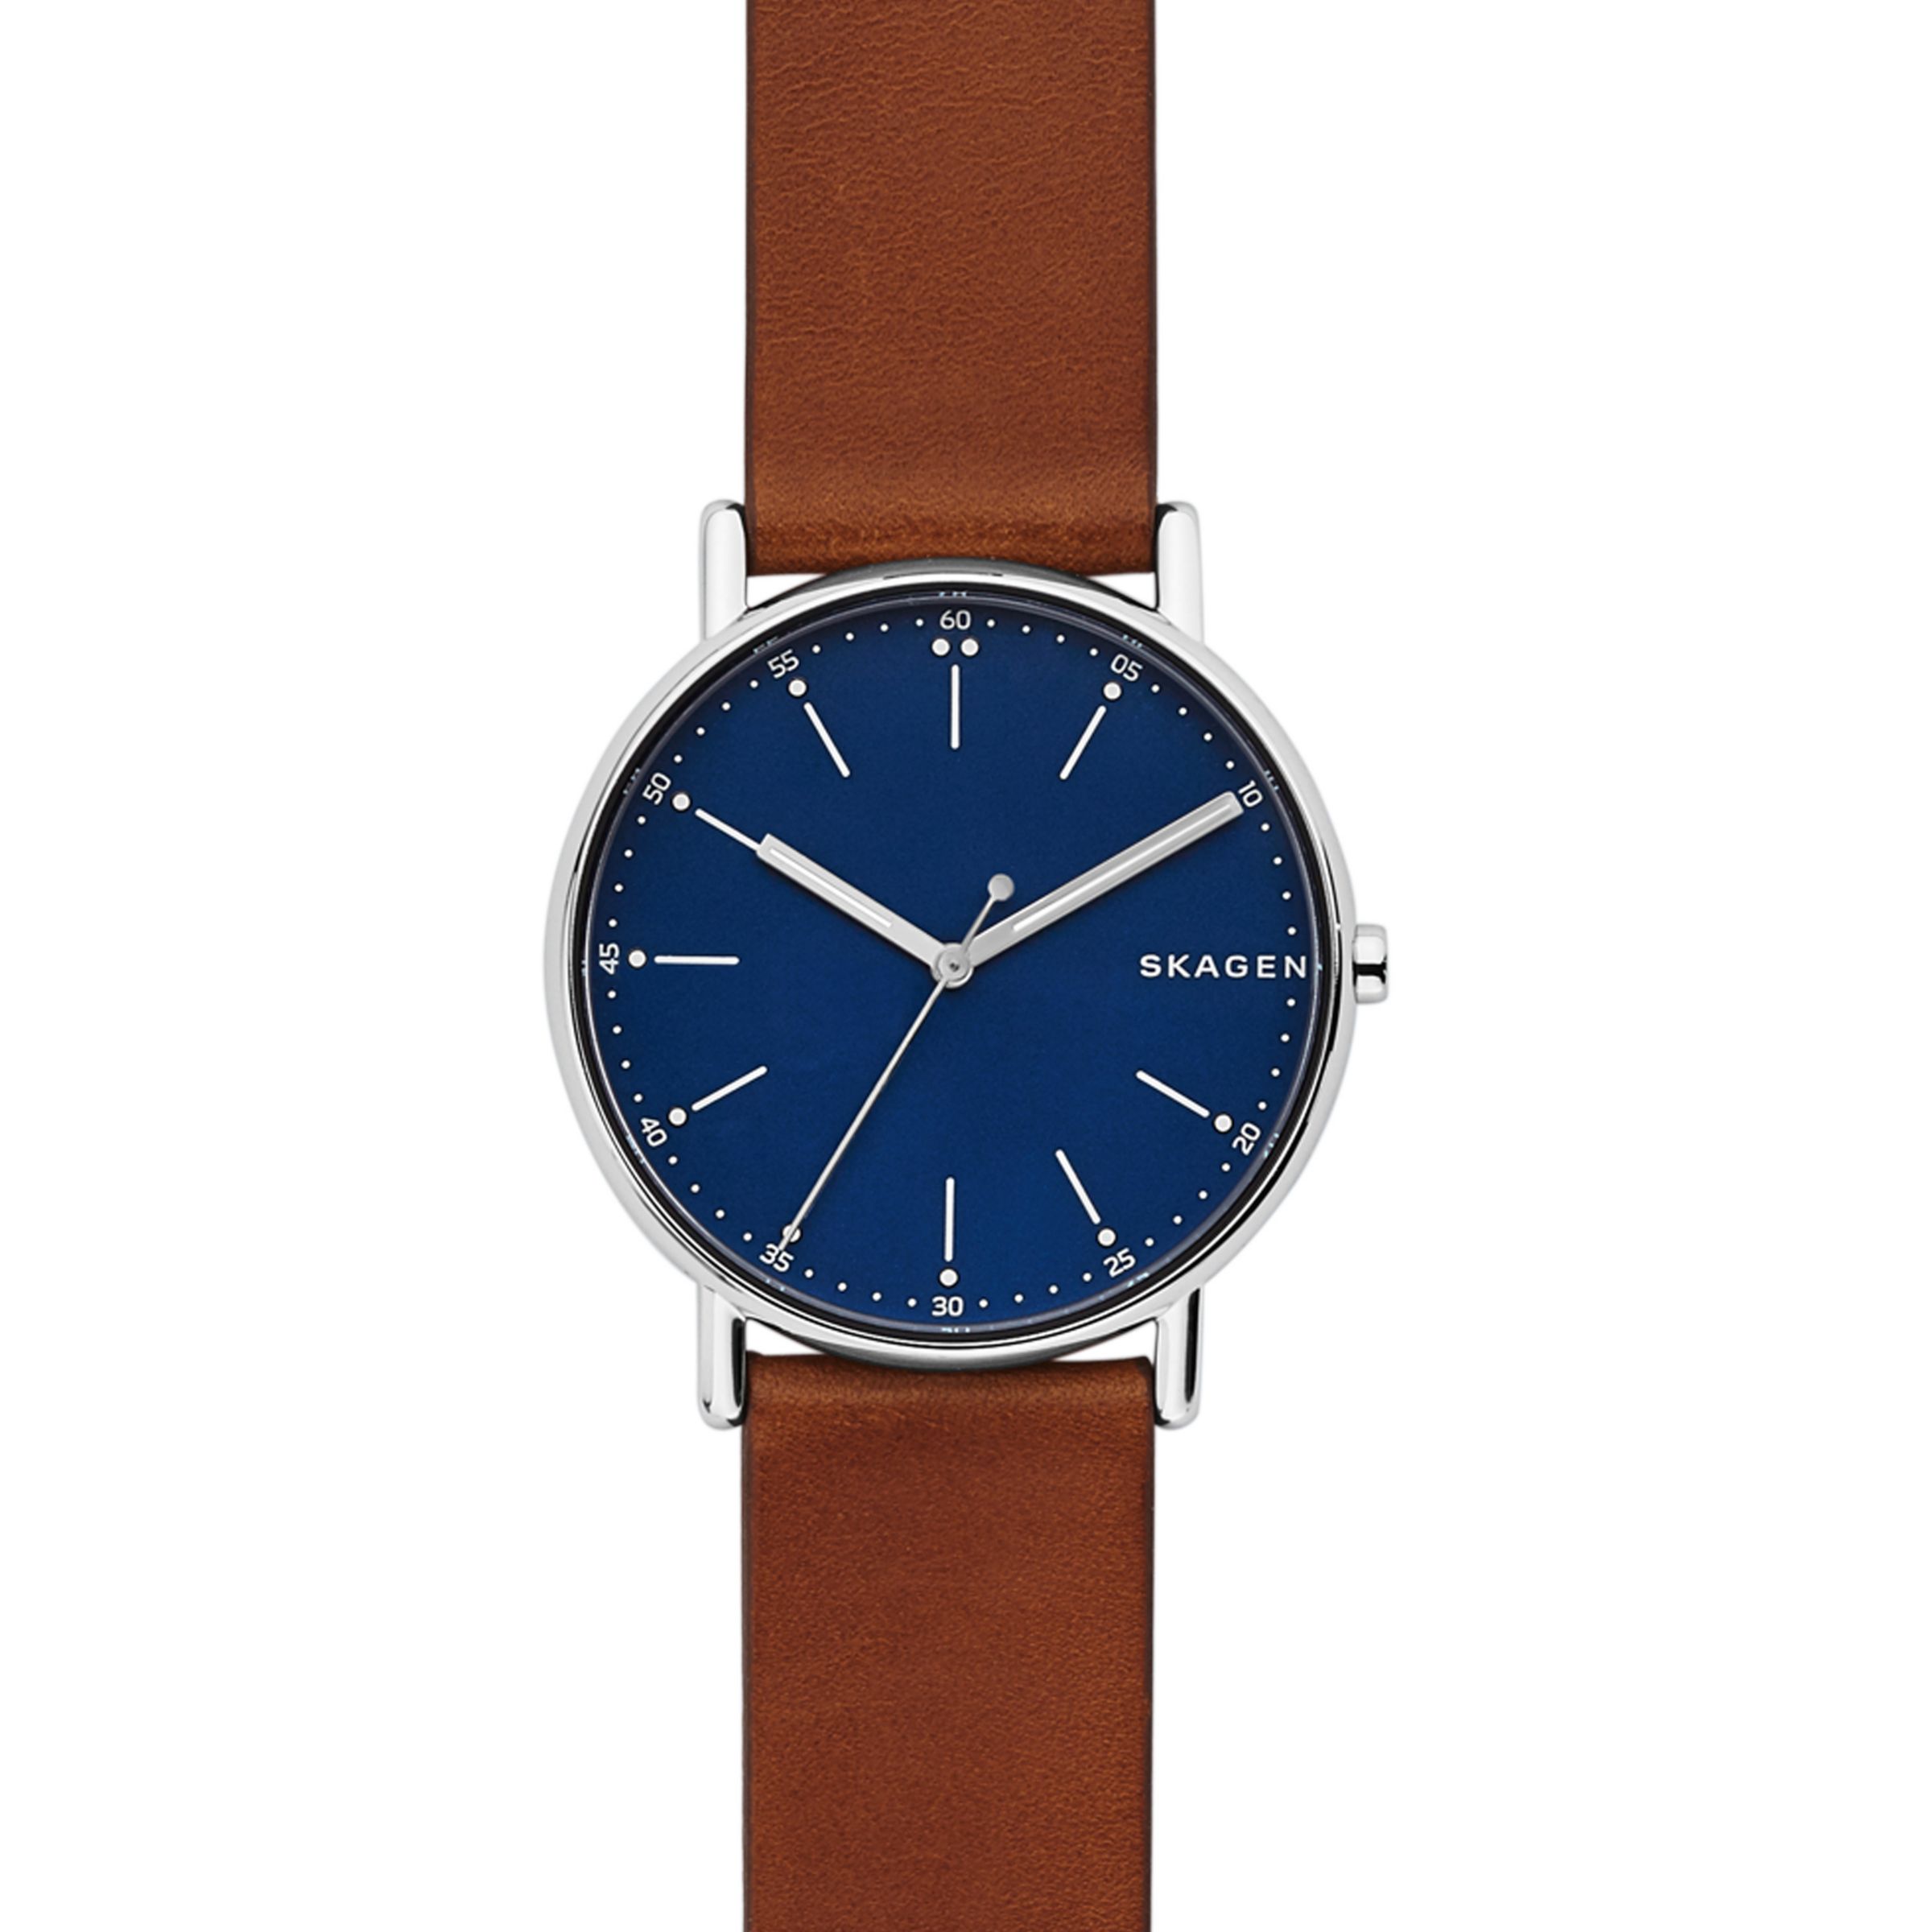 Skagen SKW6355 Men's Signatur Leather Strap Watch, Tan/Dark Blue